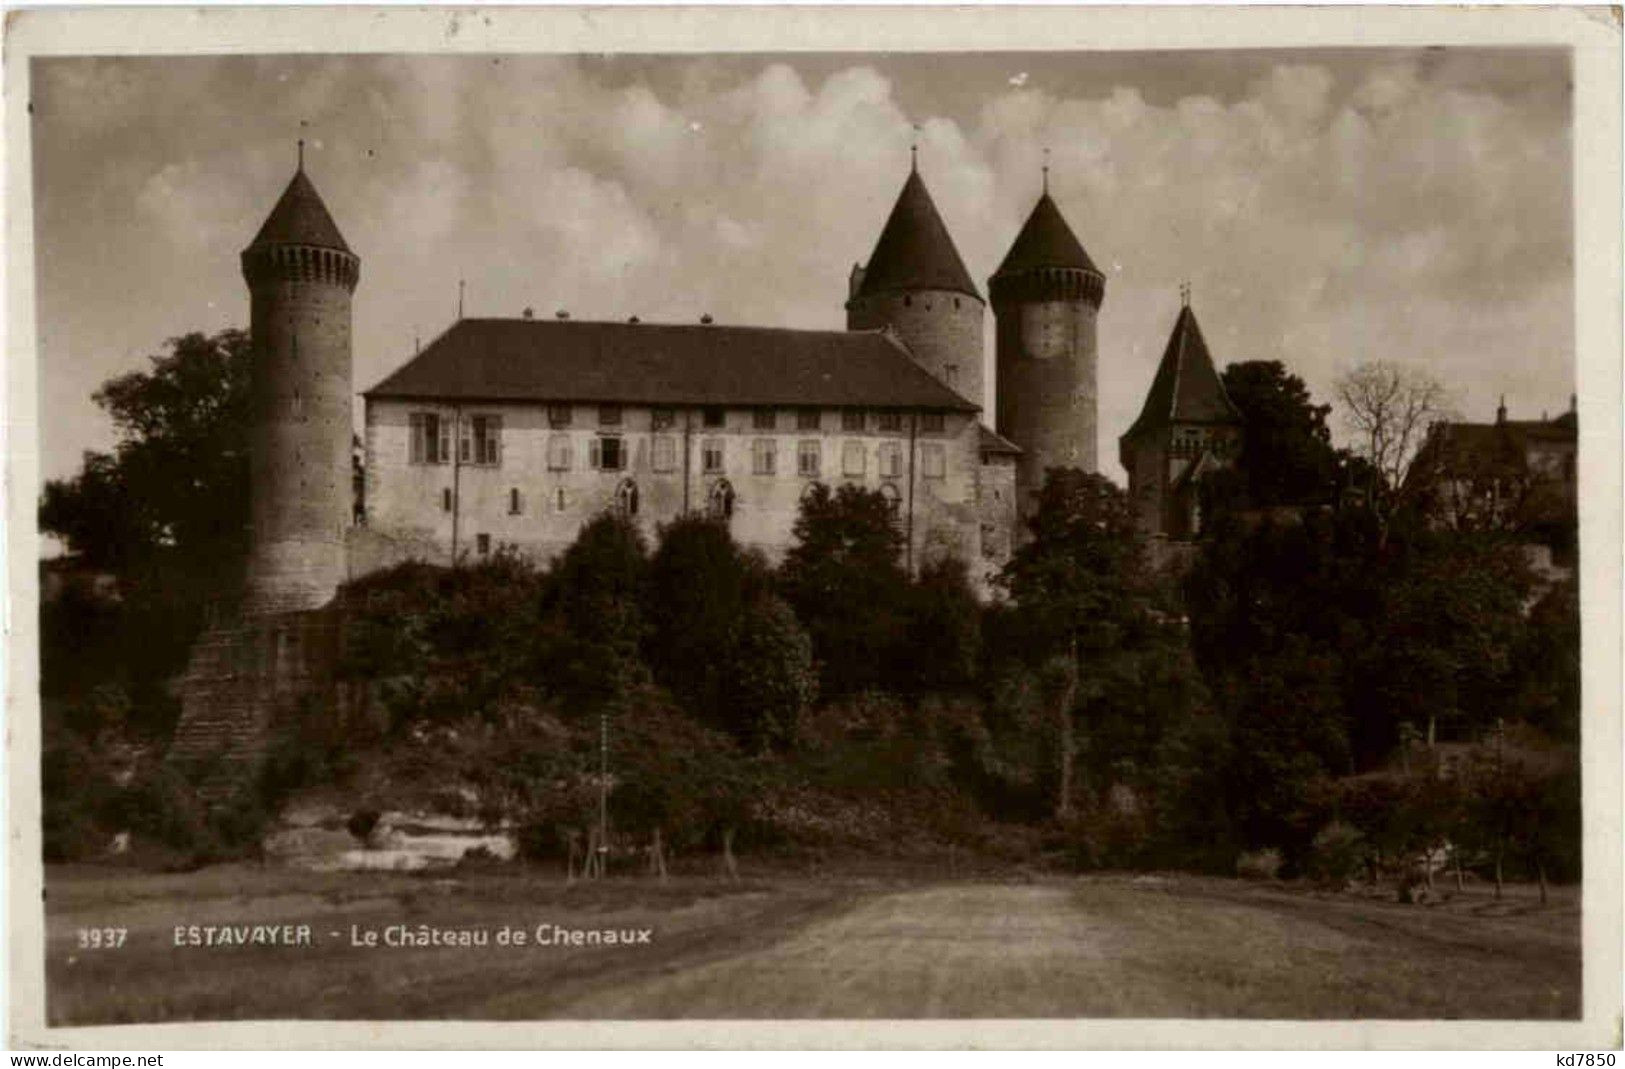 Estavayer - Le Chateau - Estavayer